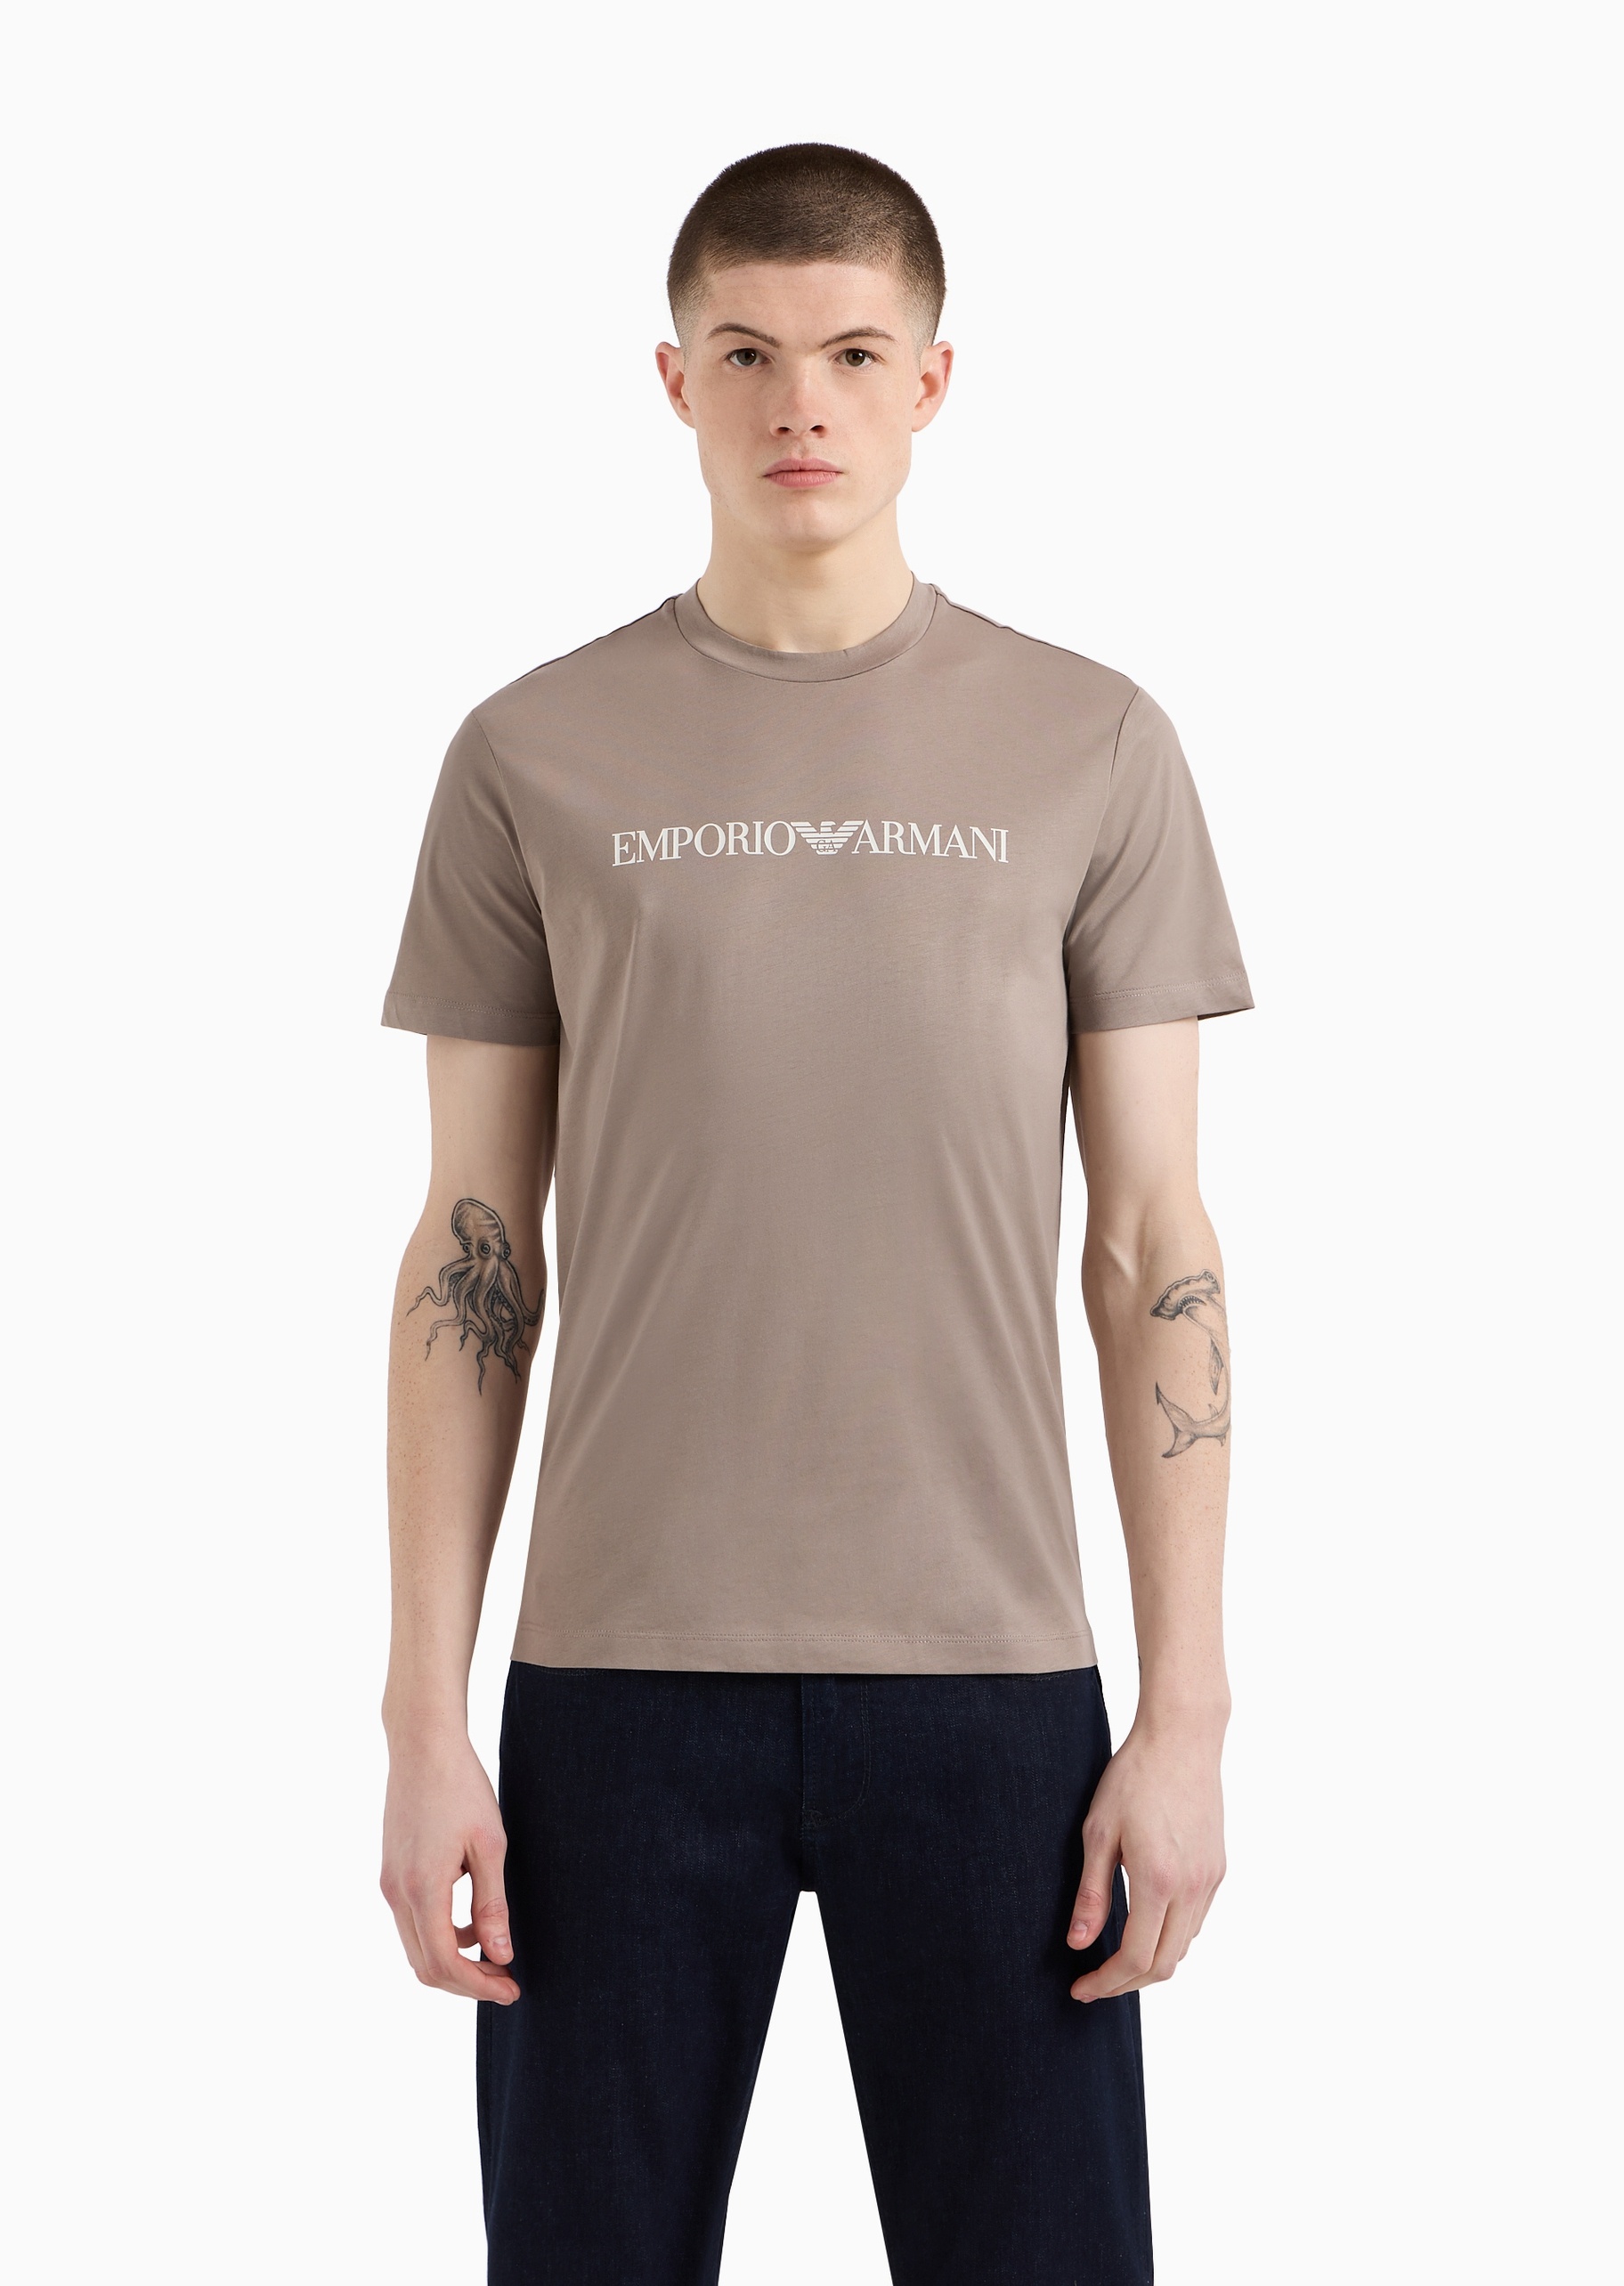 Emporio Armani 男士全棉合身短袖圆领徽标印花T恤